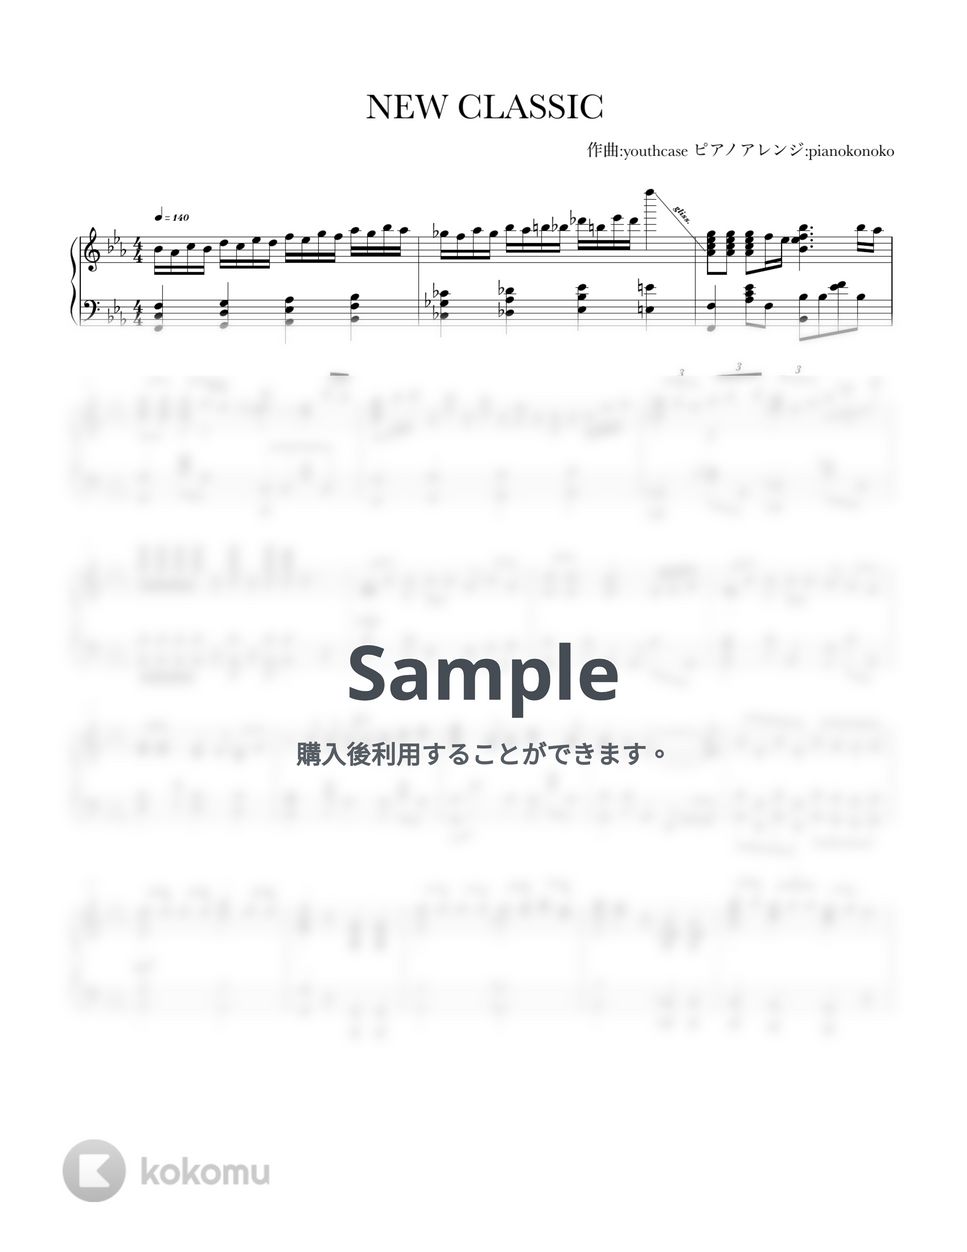 なにわ男子 - NEW　CLASSIC (ピアノソロ/なにわ男子/新曲) by pianokonoko